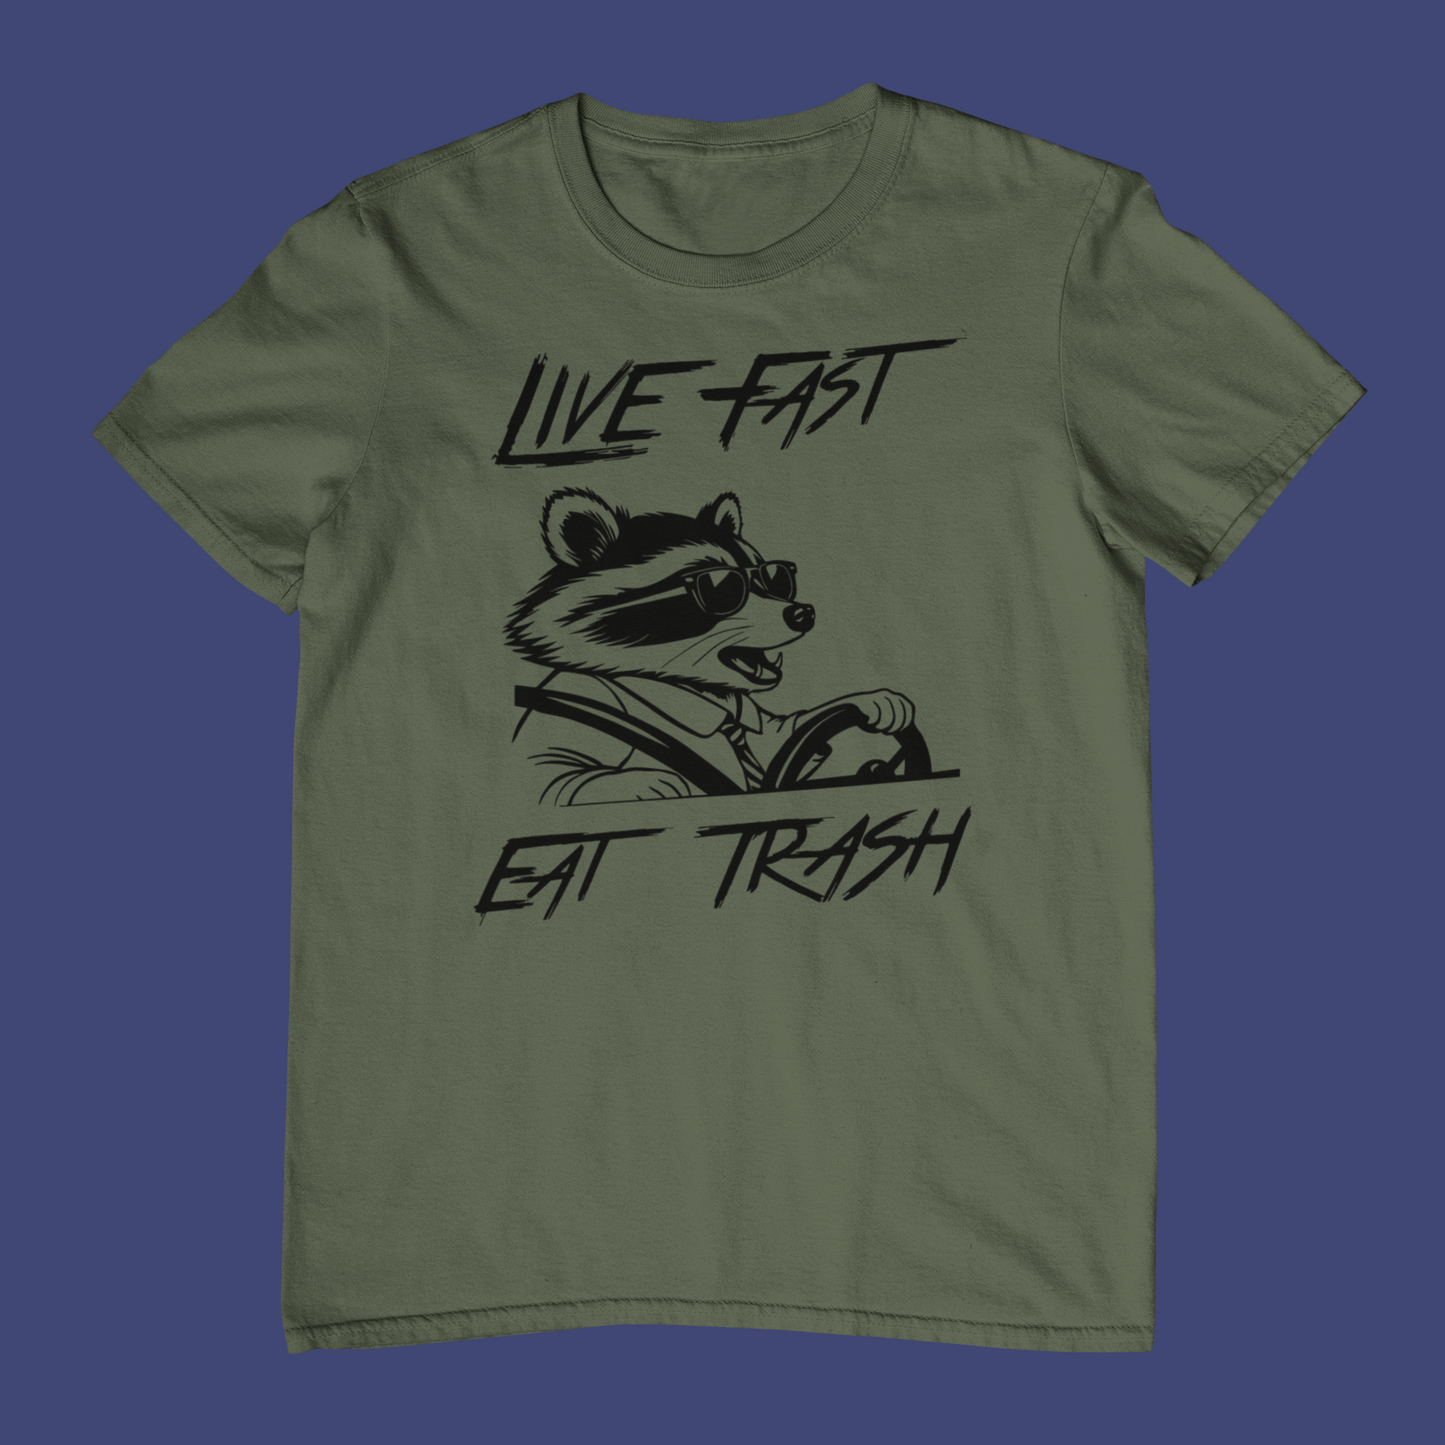 Live Fast. Eat Trash T-Shirt